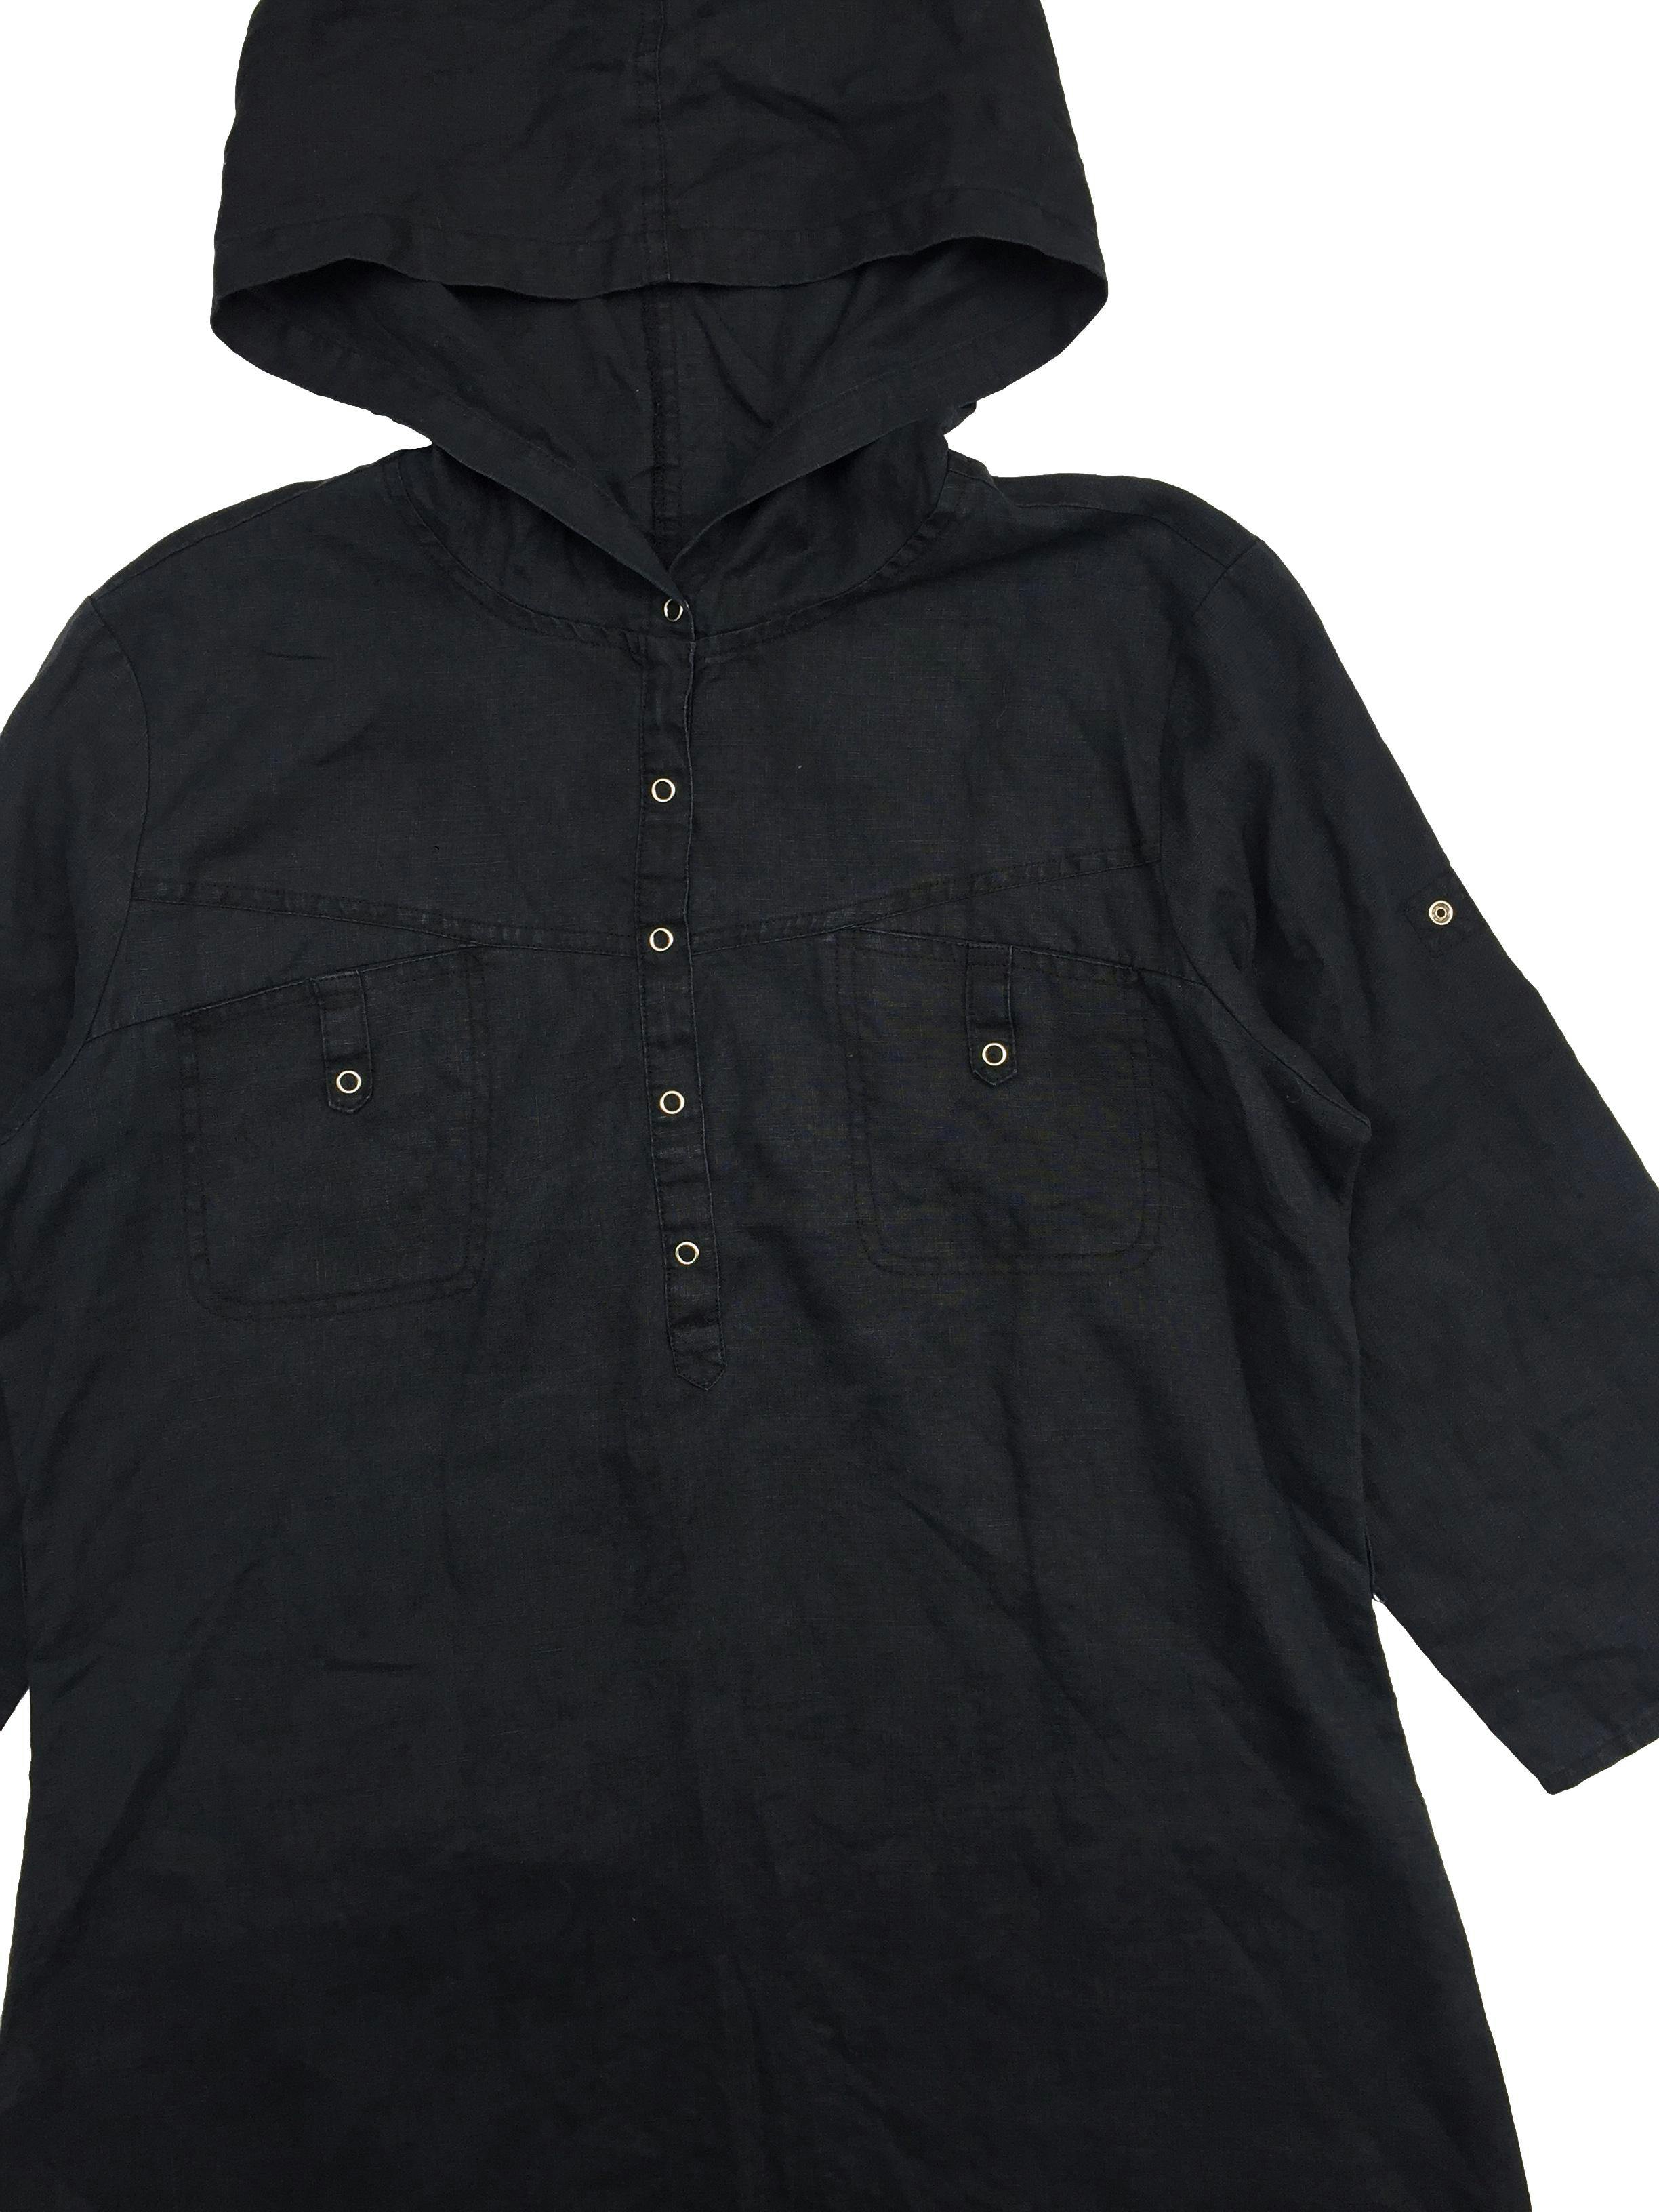 Blusa de lino negro con capucha y broches en cuello, manga 3/4. Busto 110cm Largo 72cm